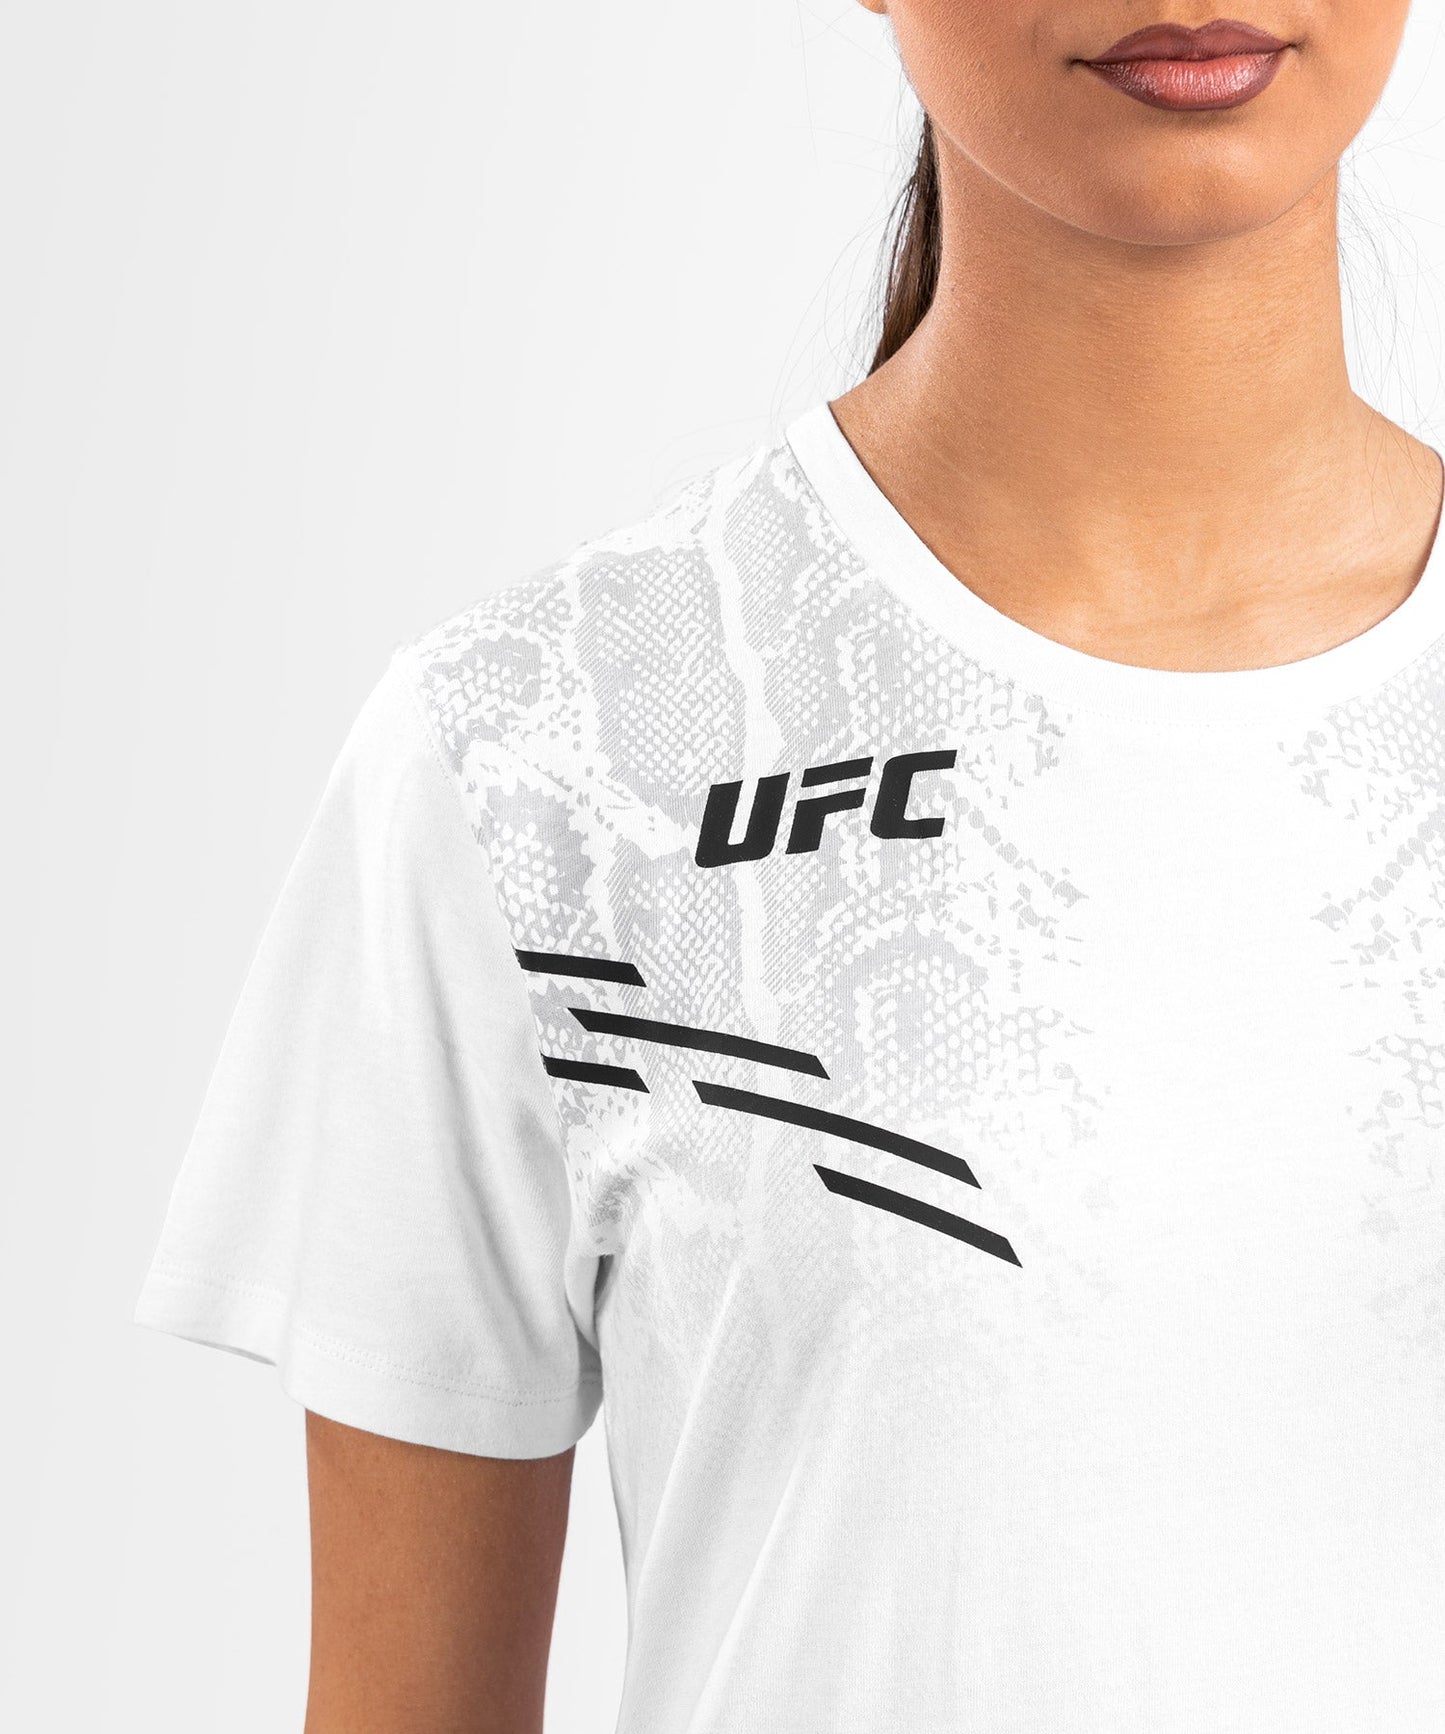 UFC Adrenaline by Venum Replica Kurzarm-T-Shirt für Frauen - Weiß